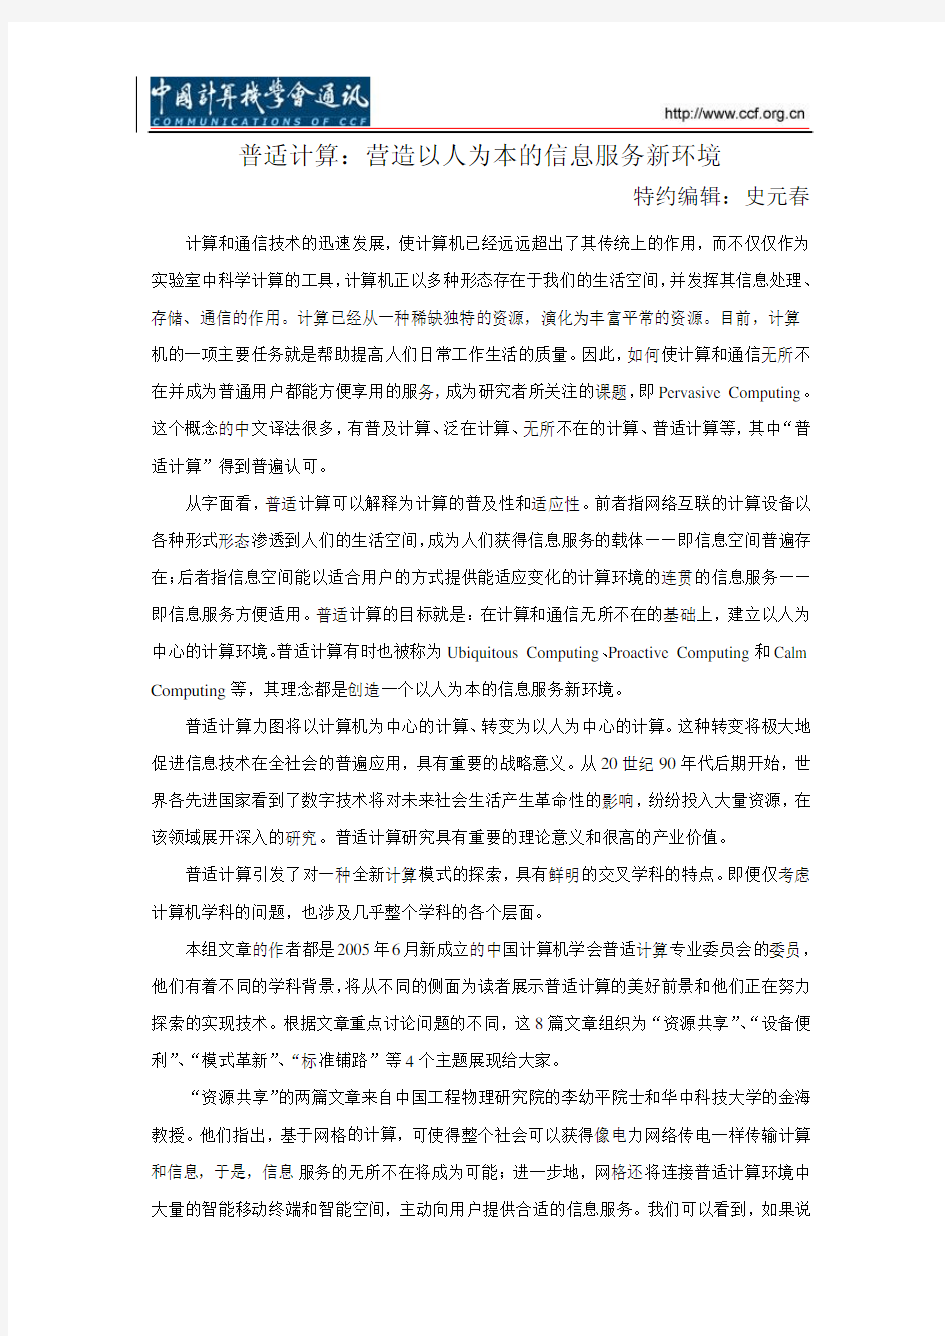 中国计算机学会通讯—普适计算